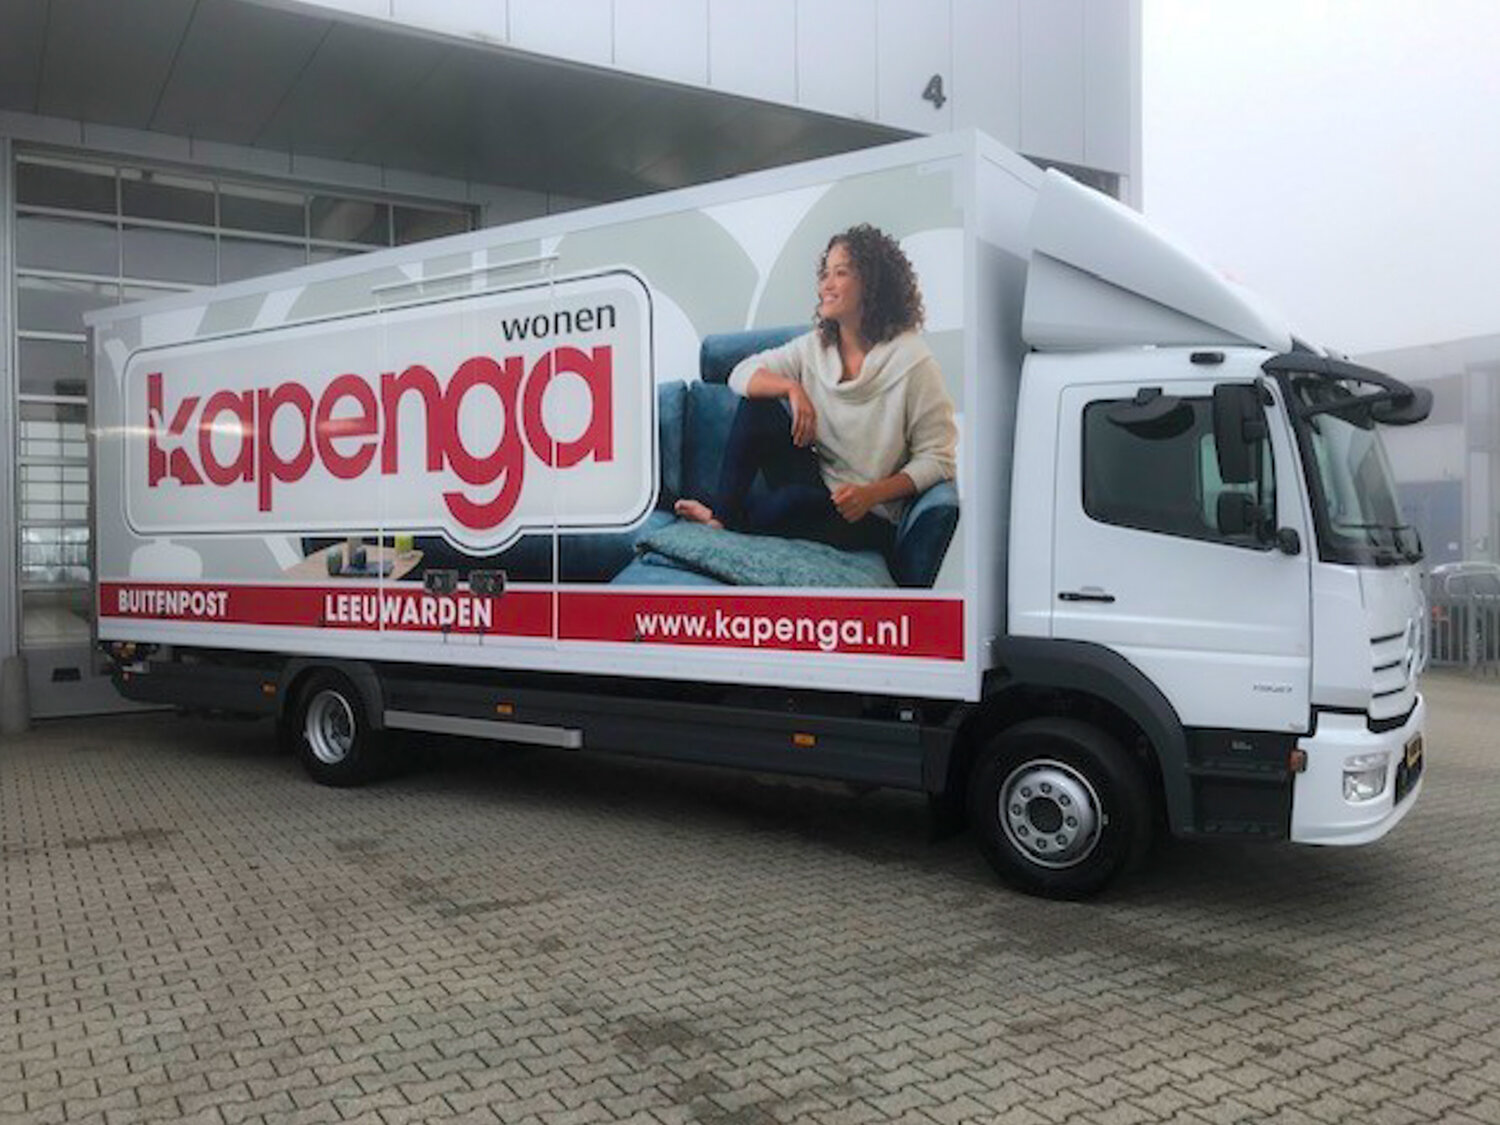 Kapenga truck met belettering